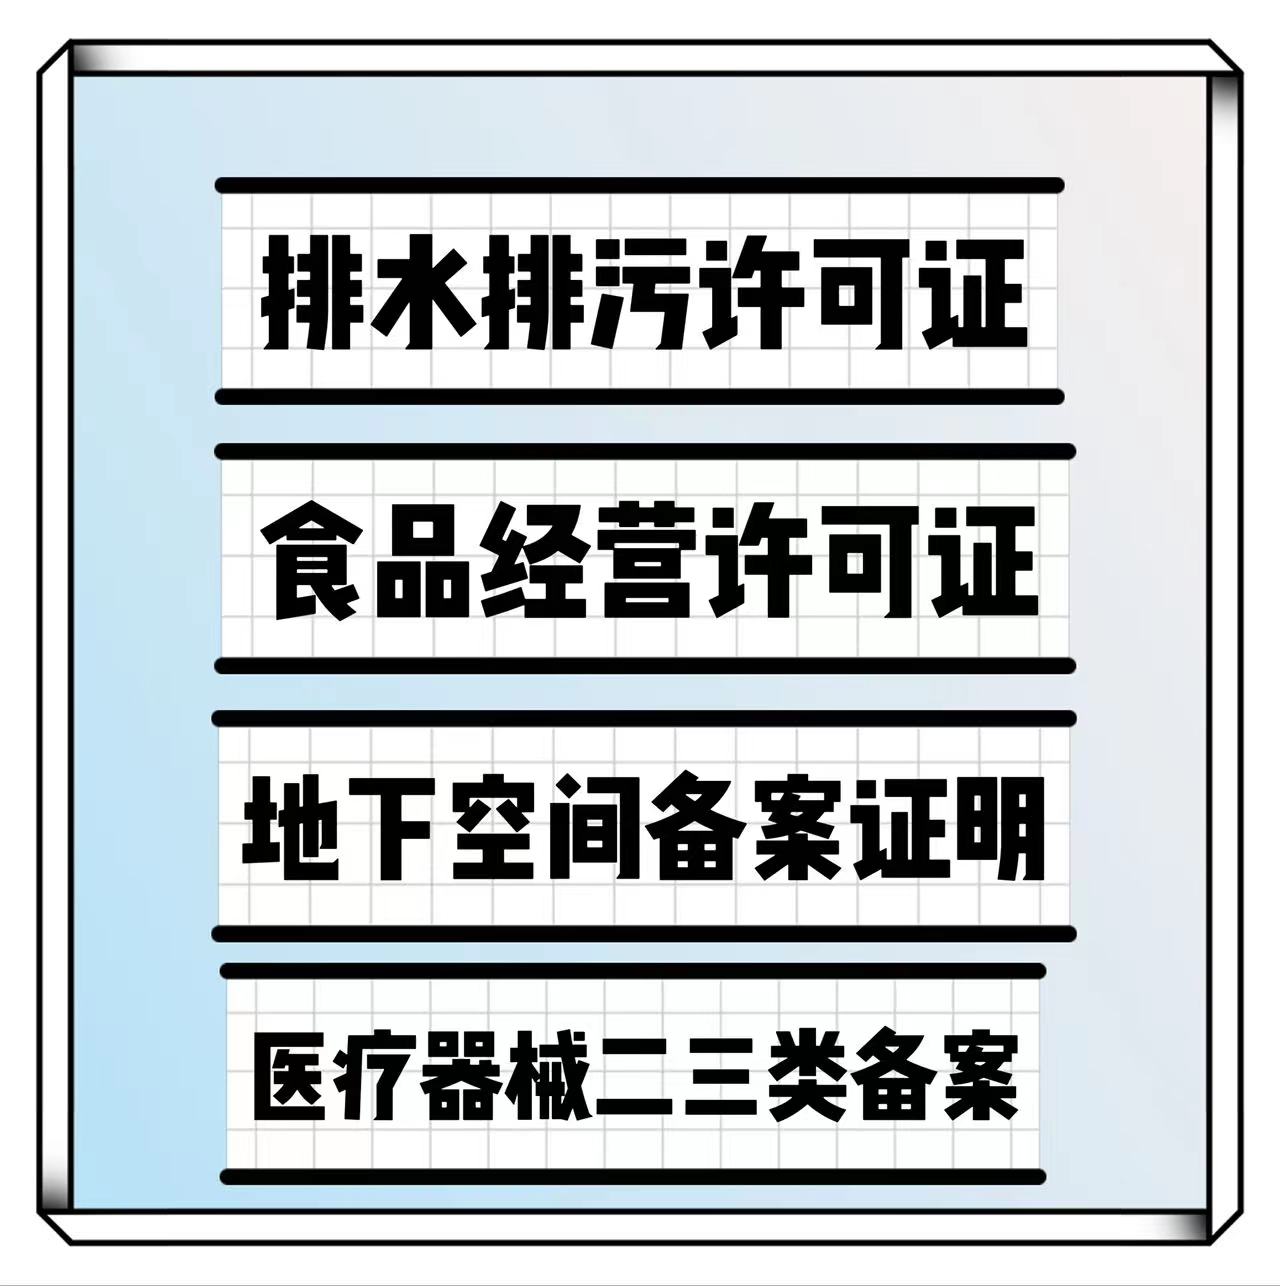 条件和流程*超市排水排污证专批北京昌平区